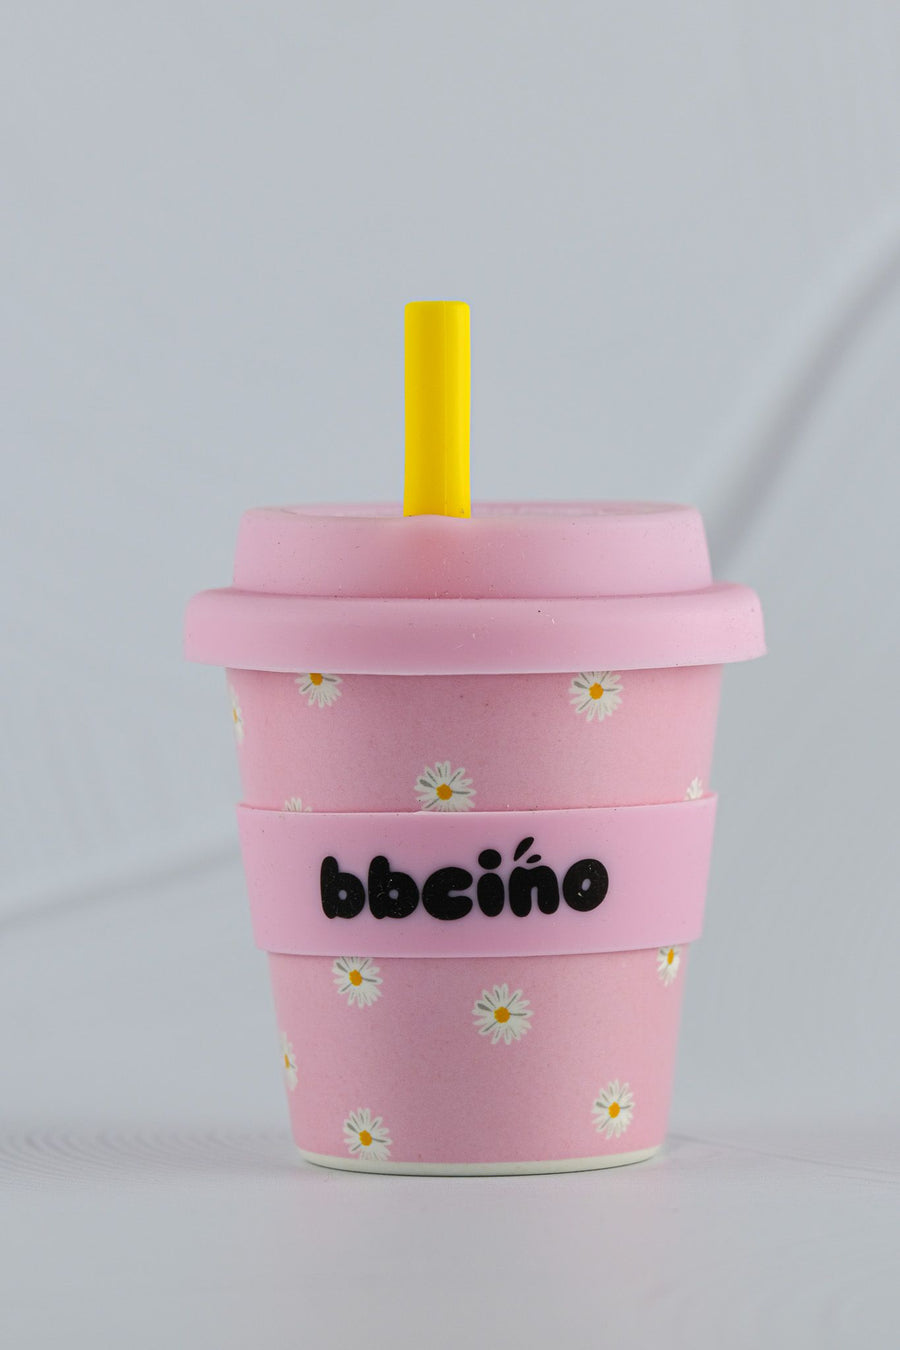 BBcino reusable cups